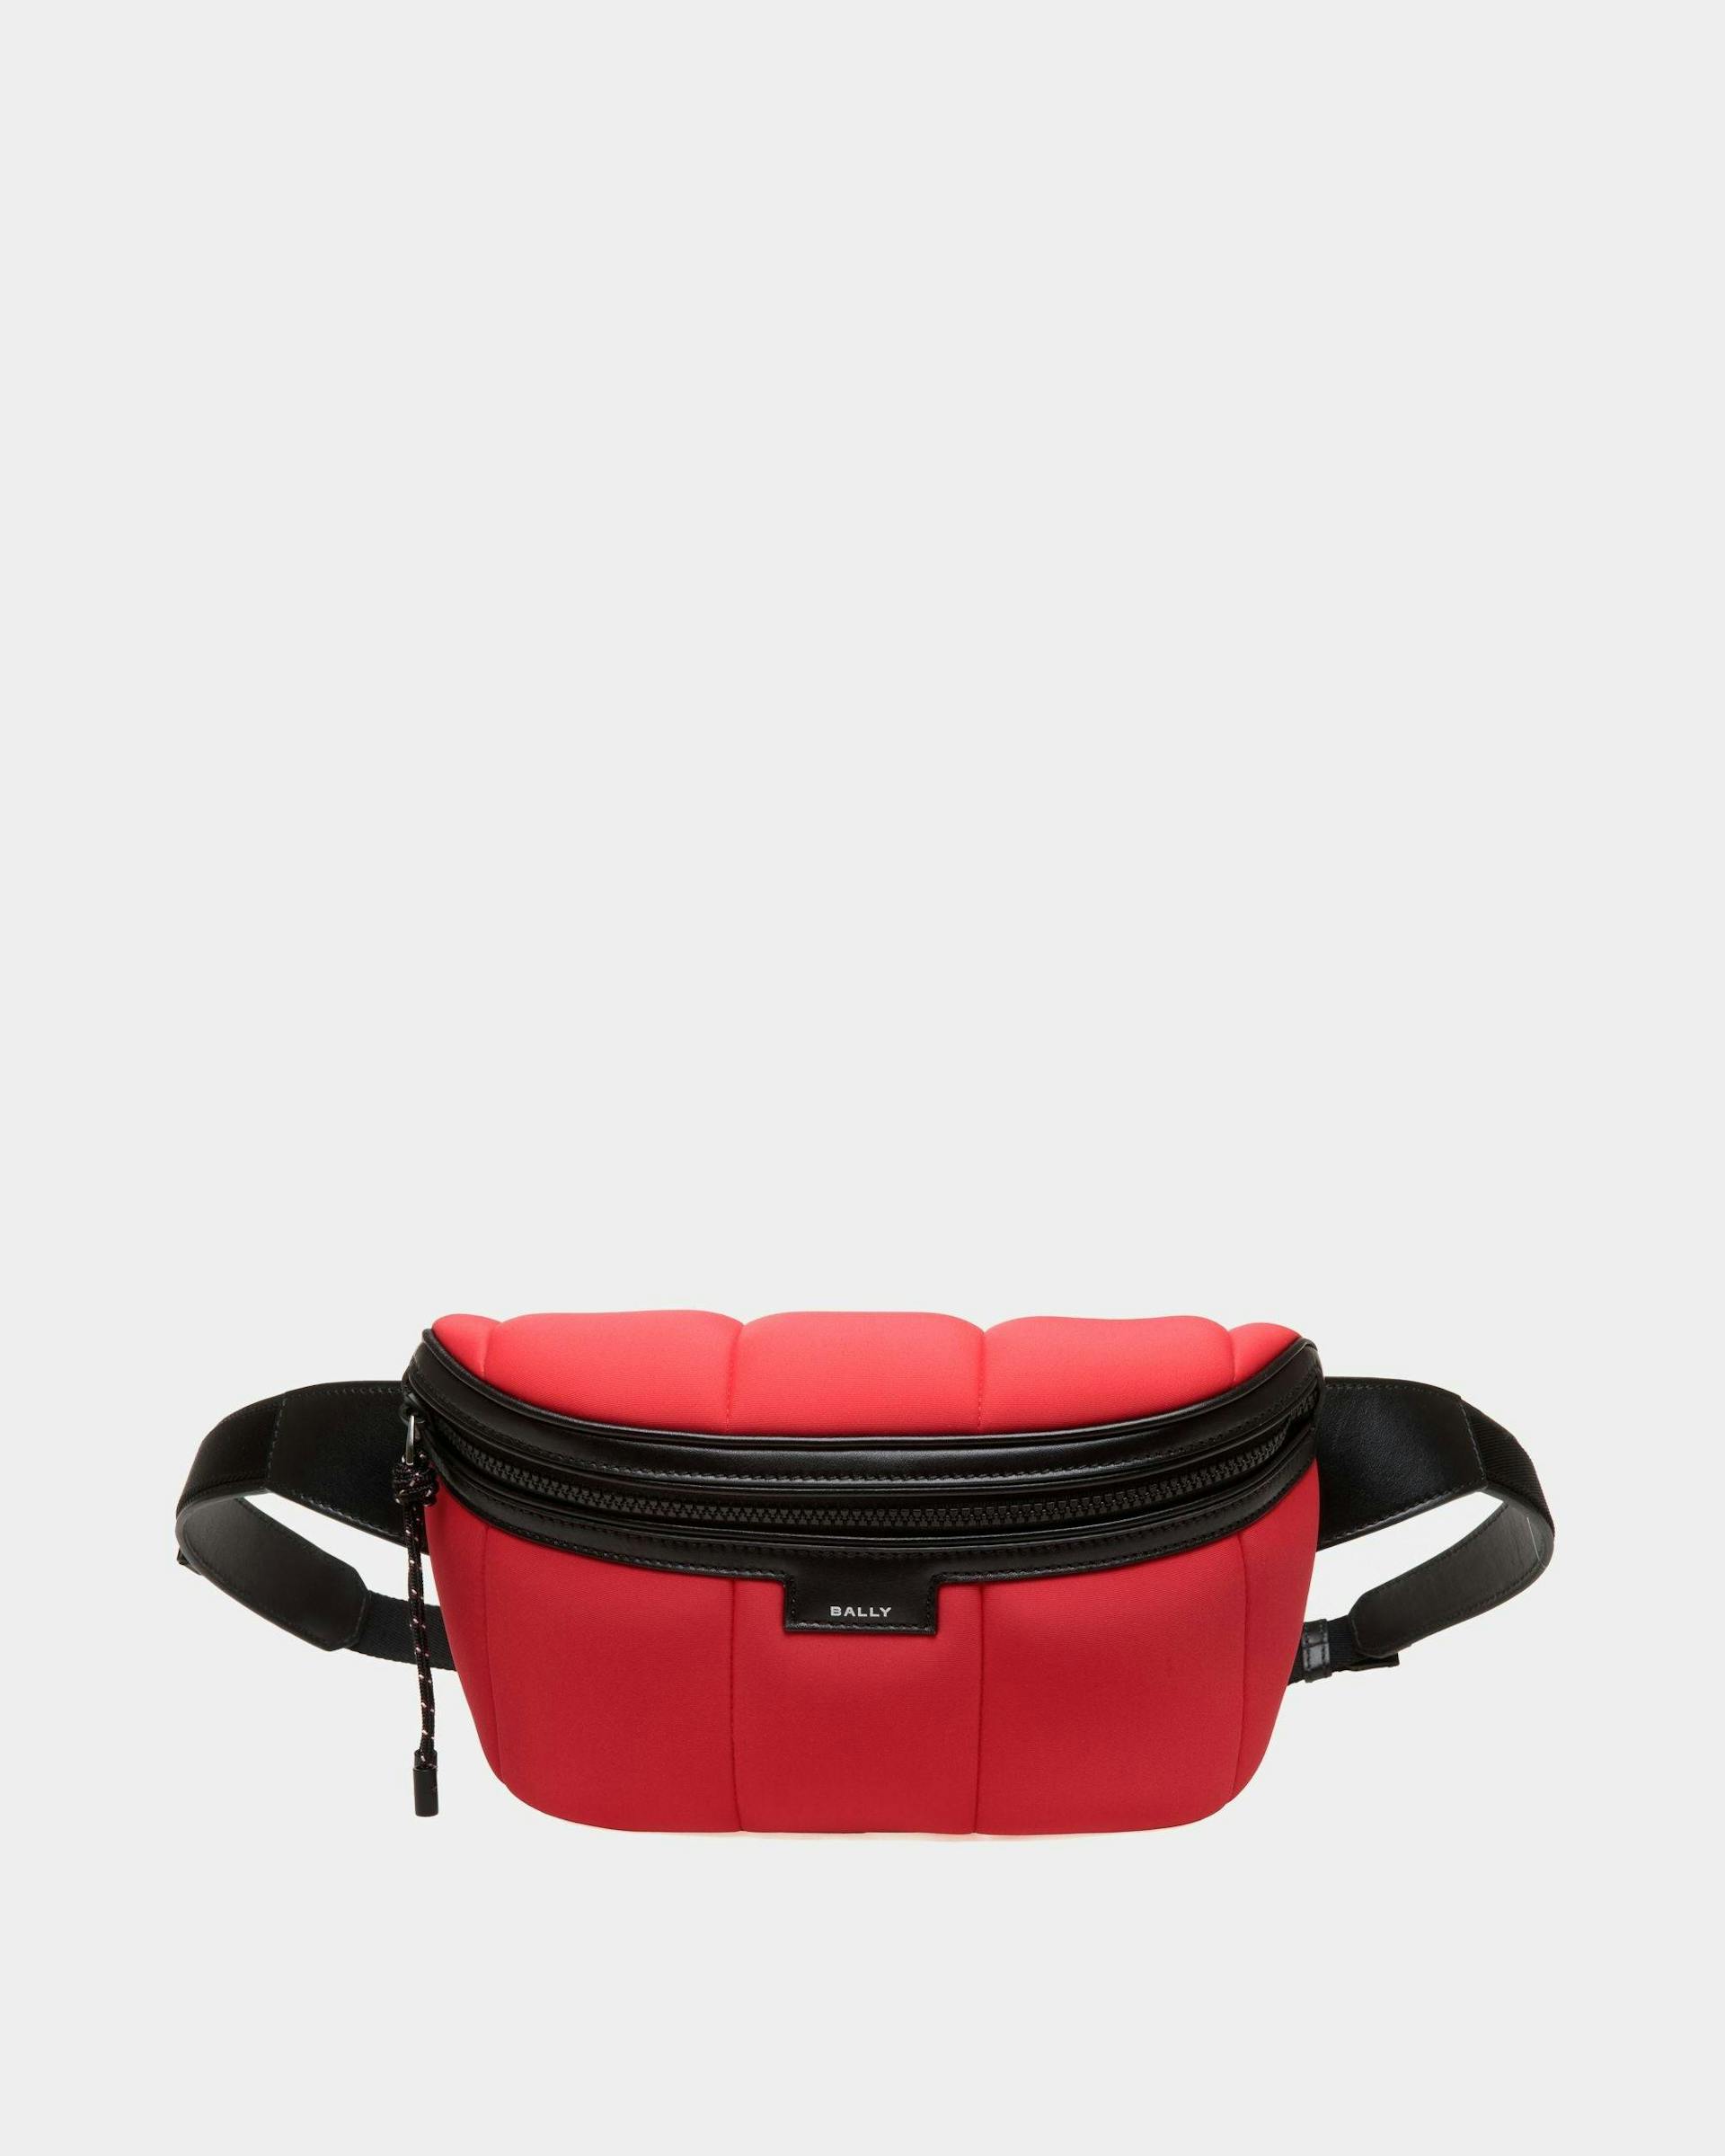 Men's Mountain Belt Bag In Red Neoprene | Bally | Still Life Front